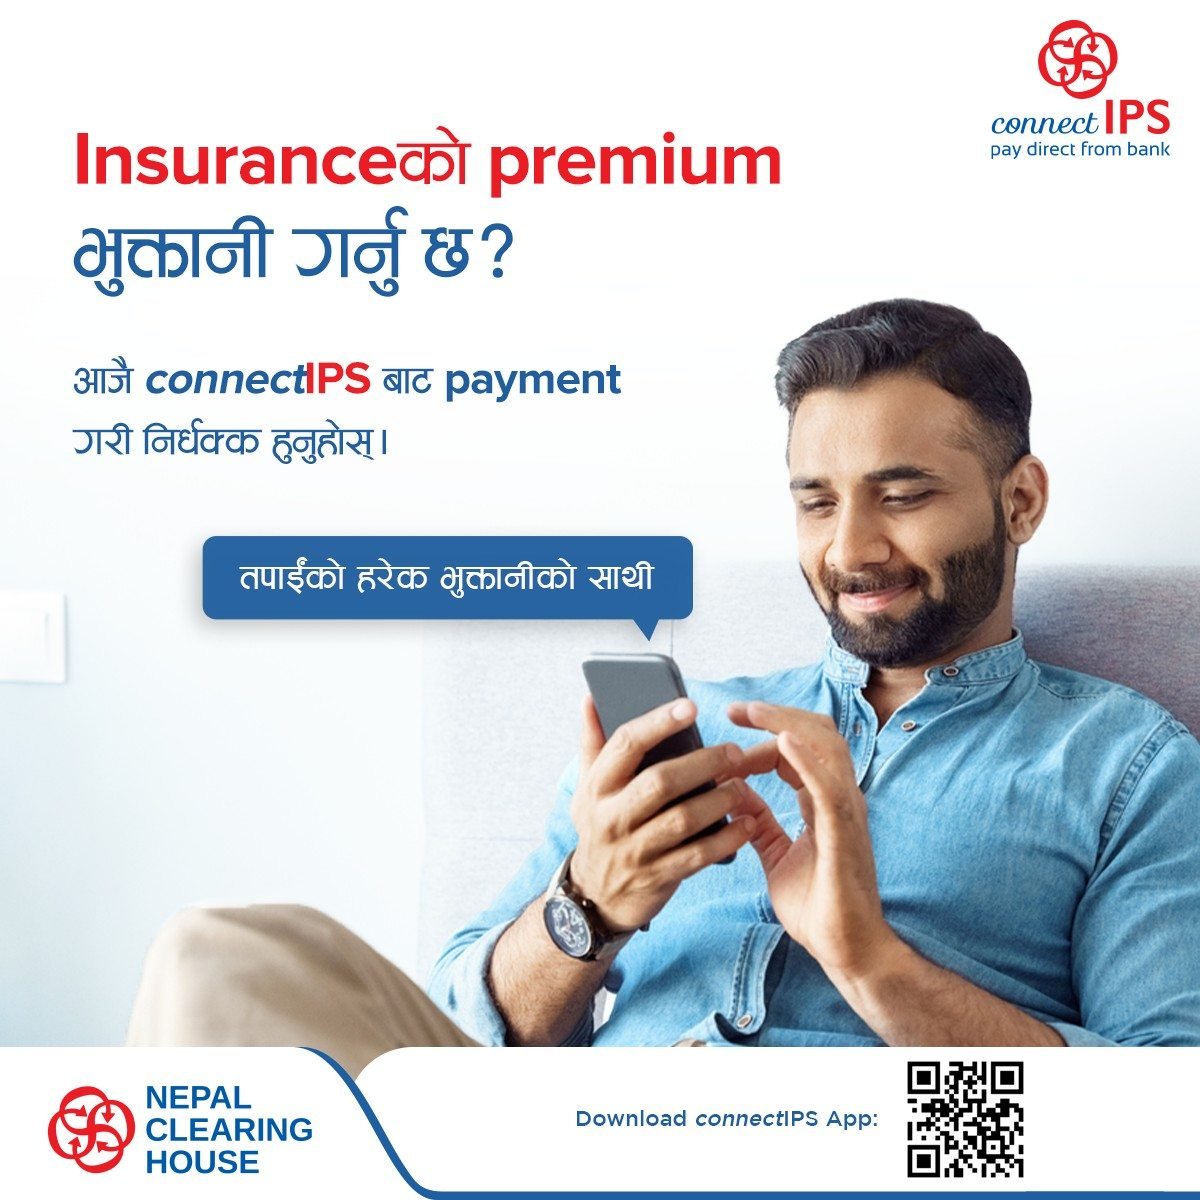 connectIPS मार्फत insurance premium को भुक्तानी बैंक खाताबाट सजिलै गर्नुहोस् ।
#NCHL #connectIPS #PayDirectFromBank #OnlinePayment #InsurancePremiumPayment